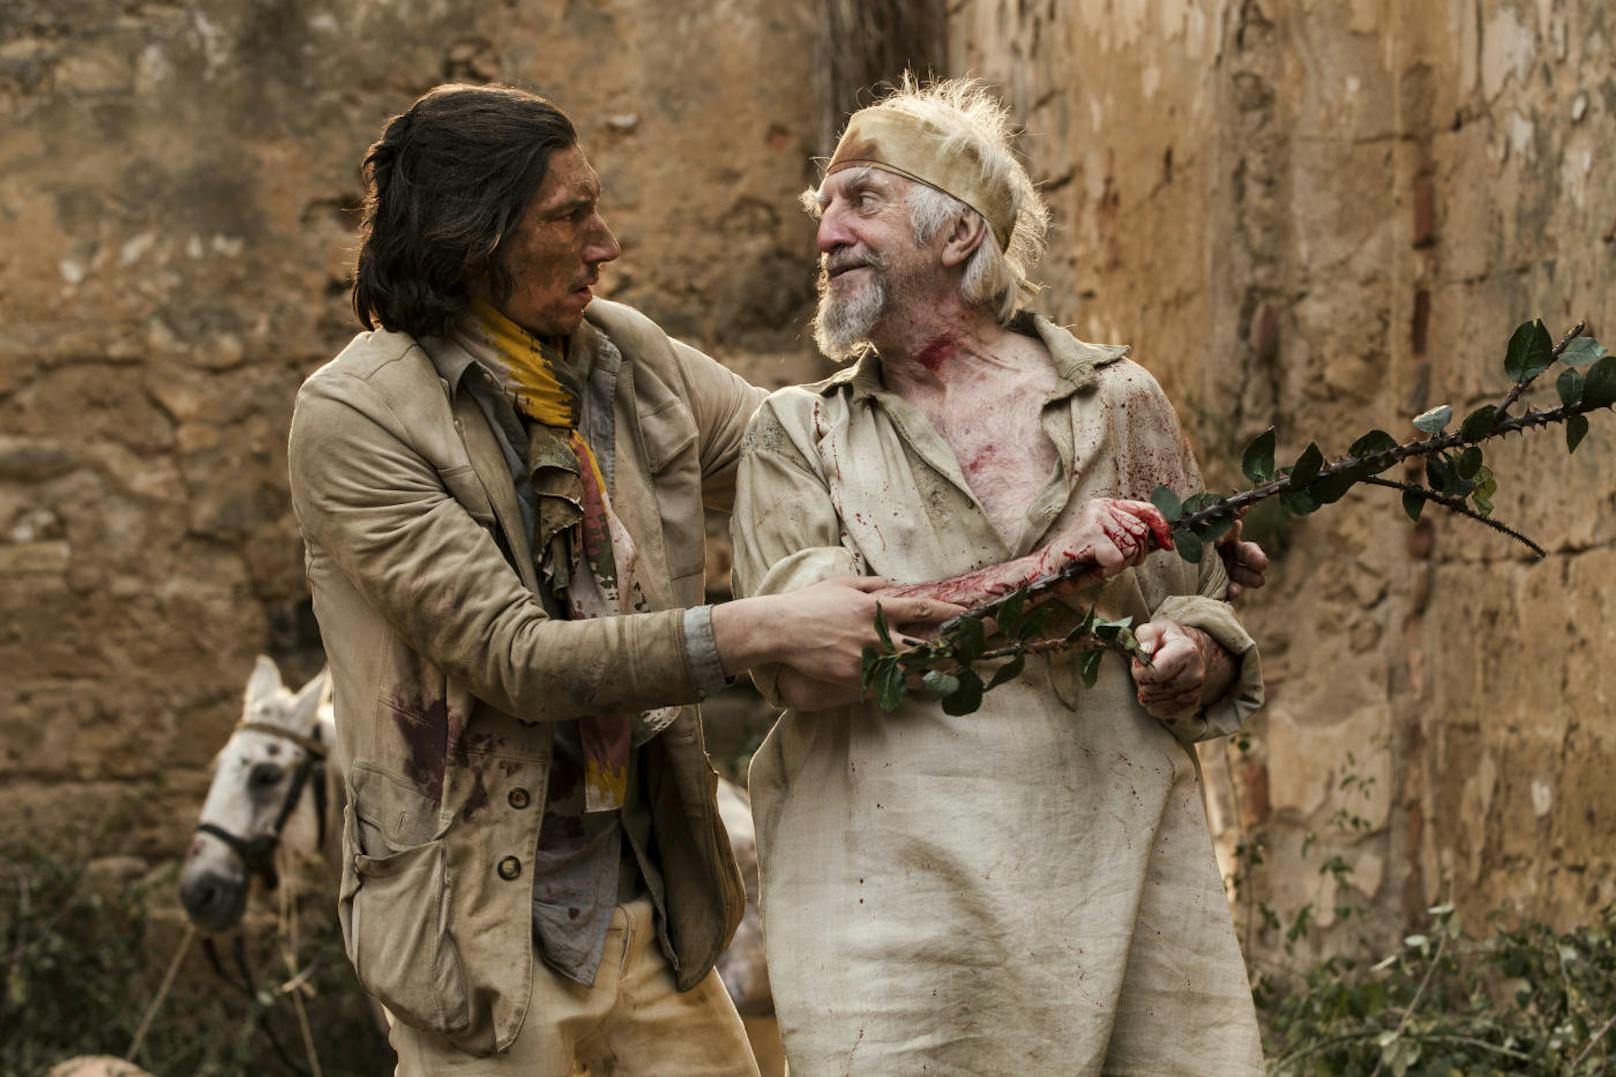 Unfreiwillig gerät Toby (Adam Driver) von einer absurden Situation in die nächste - gemeinsam mit "Don Quixote" (Jonathan Pryce).